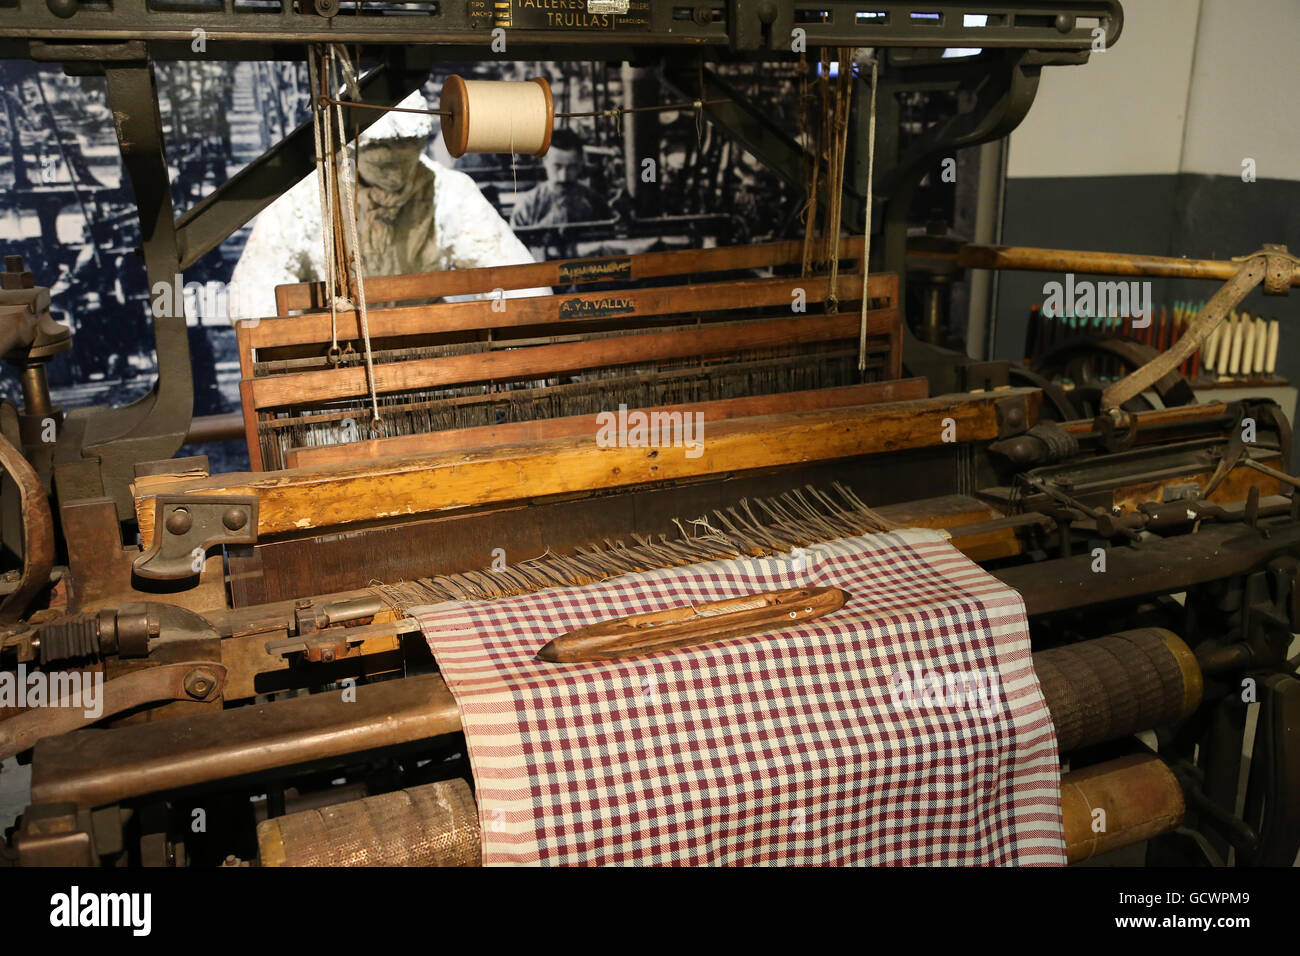 Textilfabriken. des 19. Jahrhunderts. Frau arbeitete in der Textilindustrie. Reproduktion. Spain.Museum die Geschichte von Katalonien, Barcelona Stockfoto